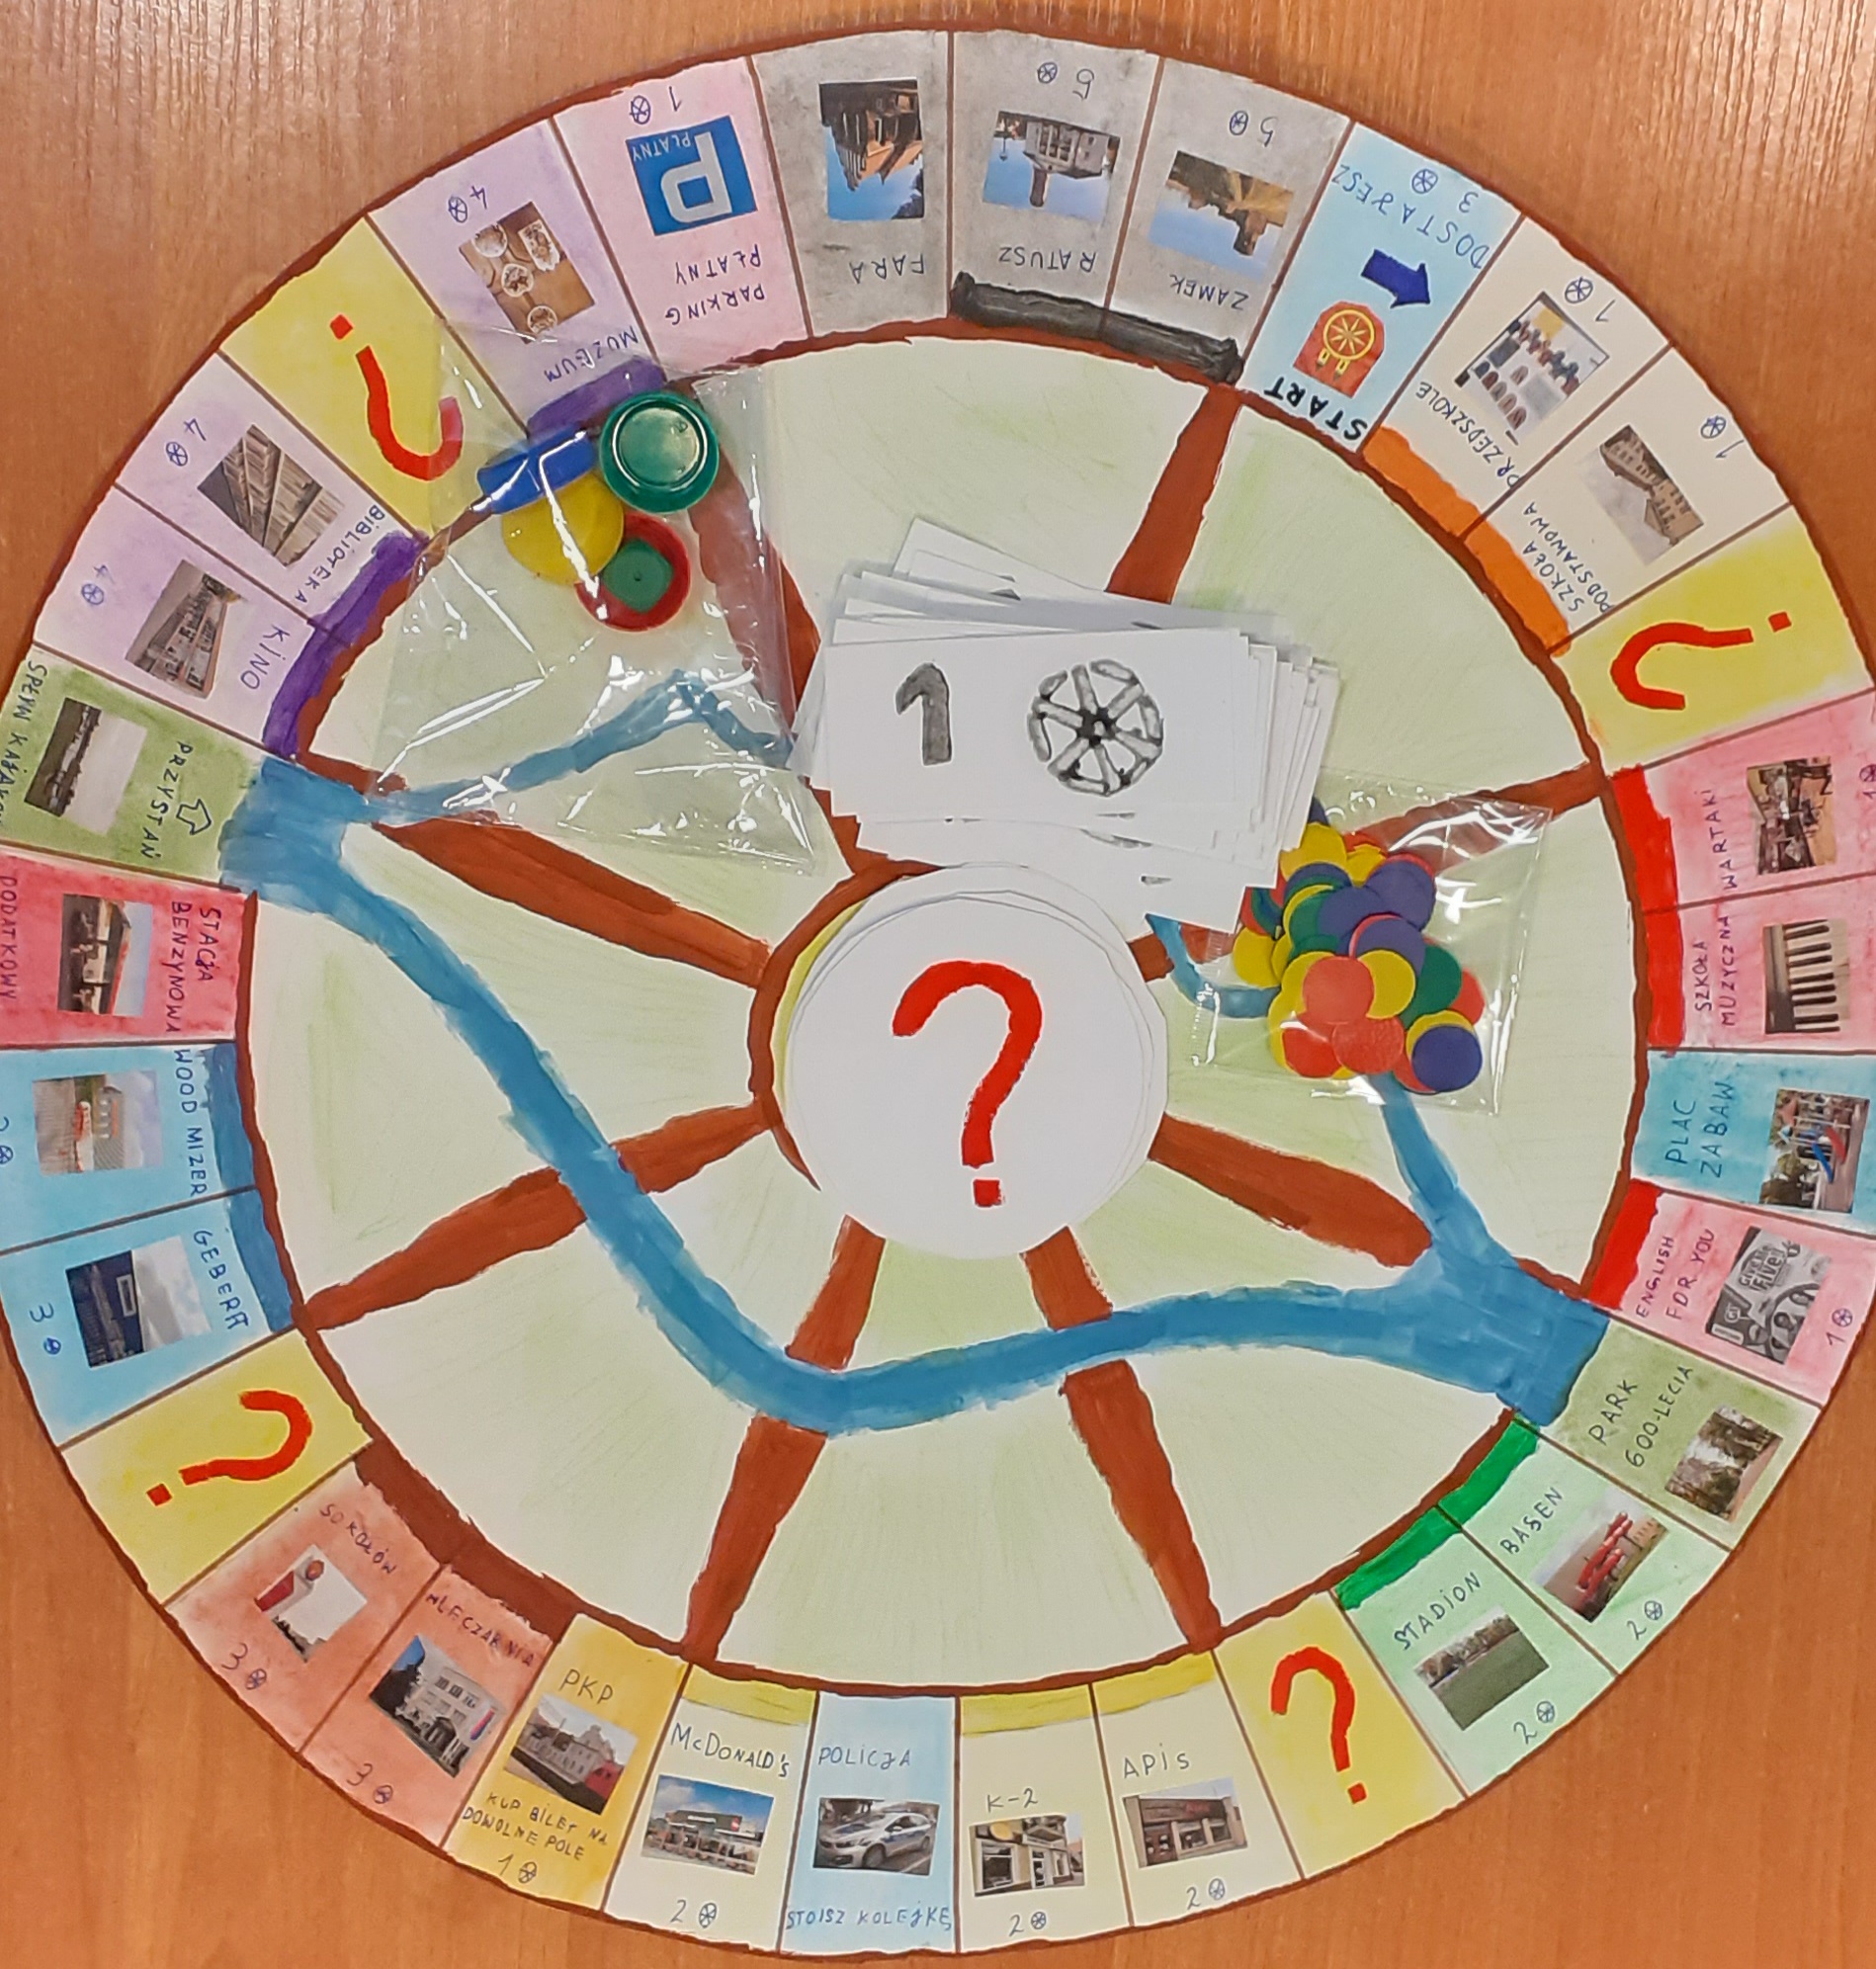 Zdjęcie gry planszowej Monopoly jednego z uczestników konkursu 